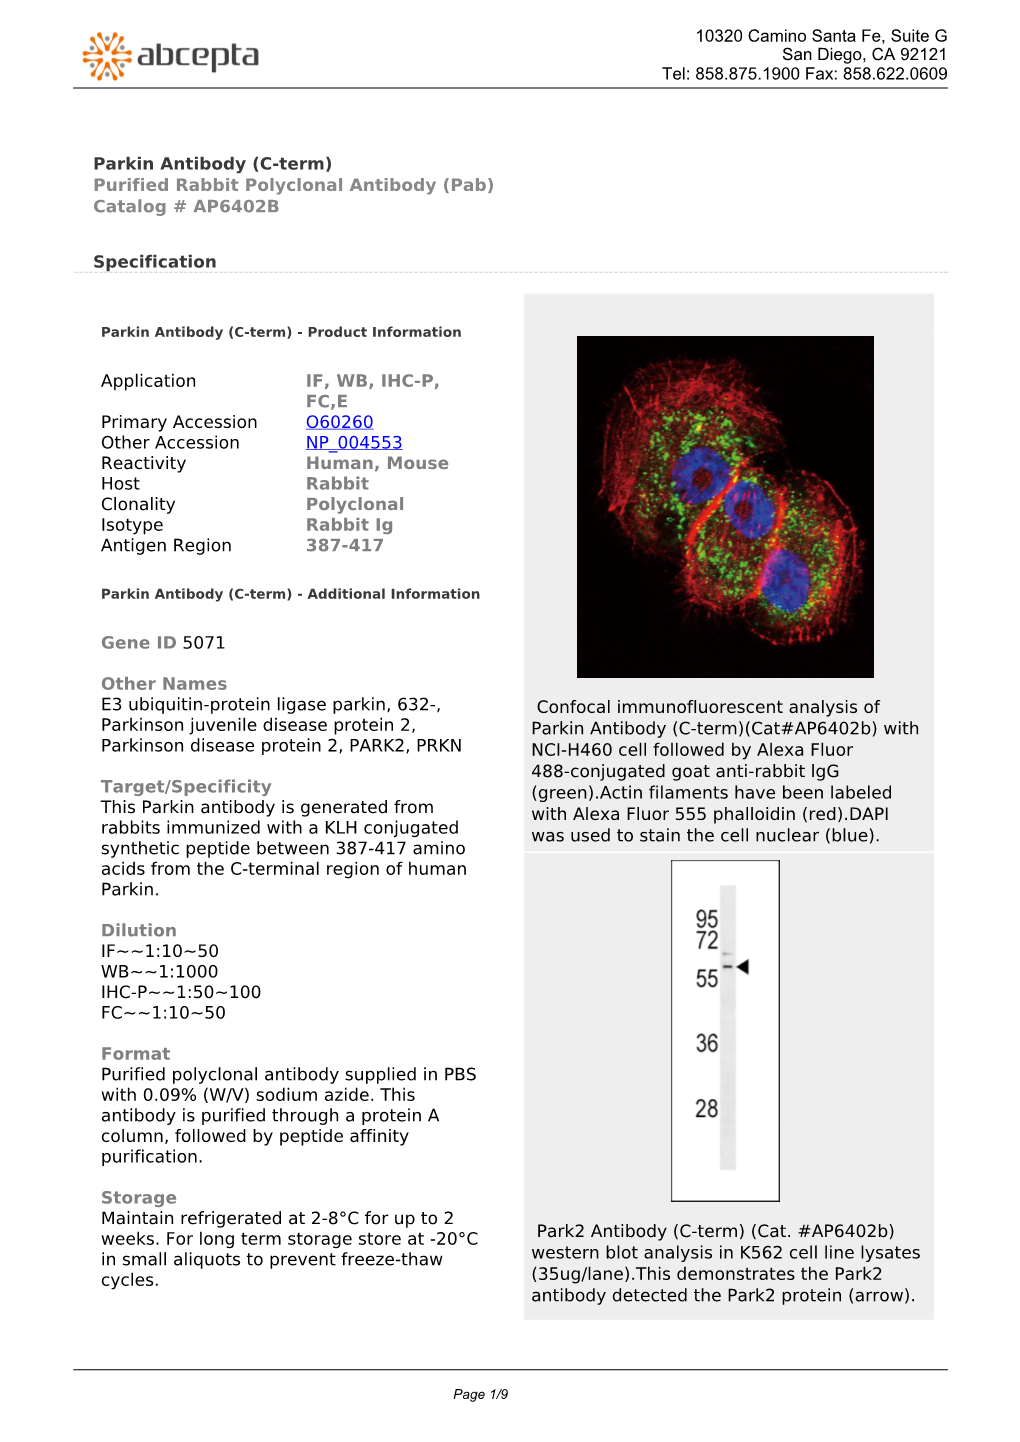 Parkin Antibody (C-Term) Purified Rabbit Polyclonal Antibody (Pab) Catalog # AP6402B